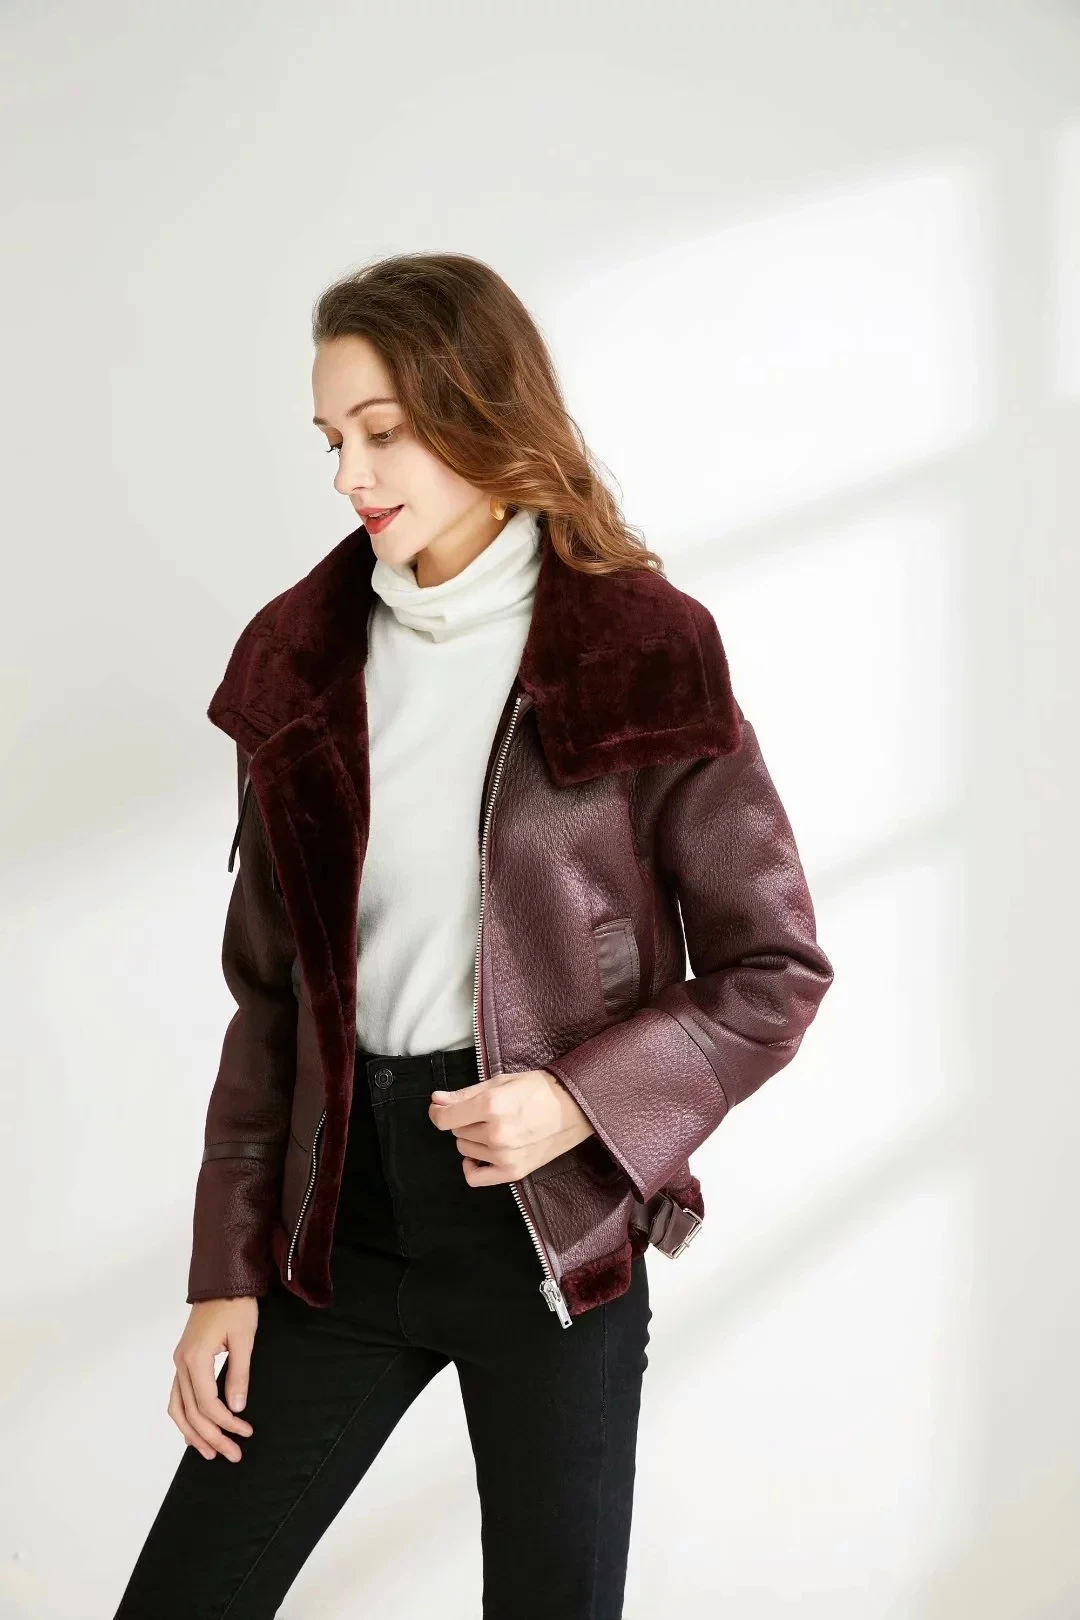 Зимнее пальто, женская куртка, высококачественное Женское пальто, женские толстые модные куртки, зимняя теплая черная одежда, повседневные парки